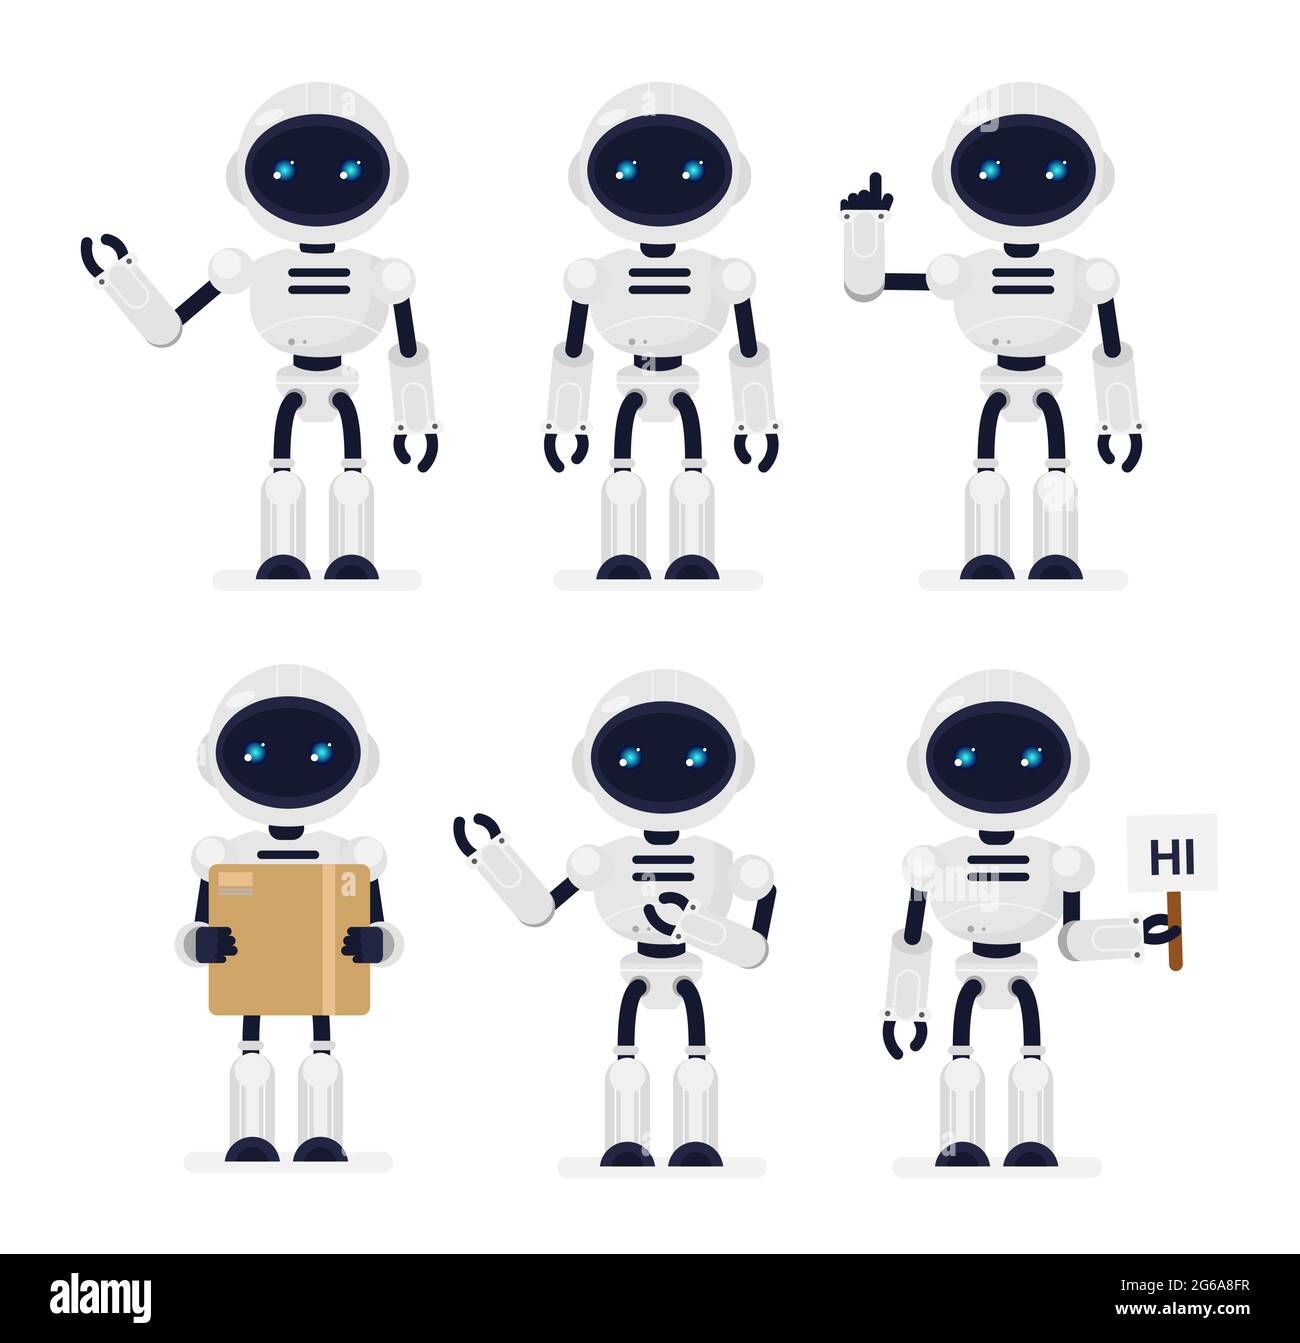 Illustrazione vettoriale Set di robot carini in diverse posizioni su sfondo bianco. Tecnologie, concetto di robot in stile piano cartoon. Illustrazione Vettoriale